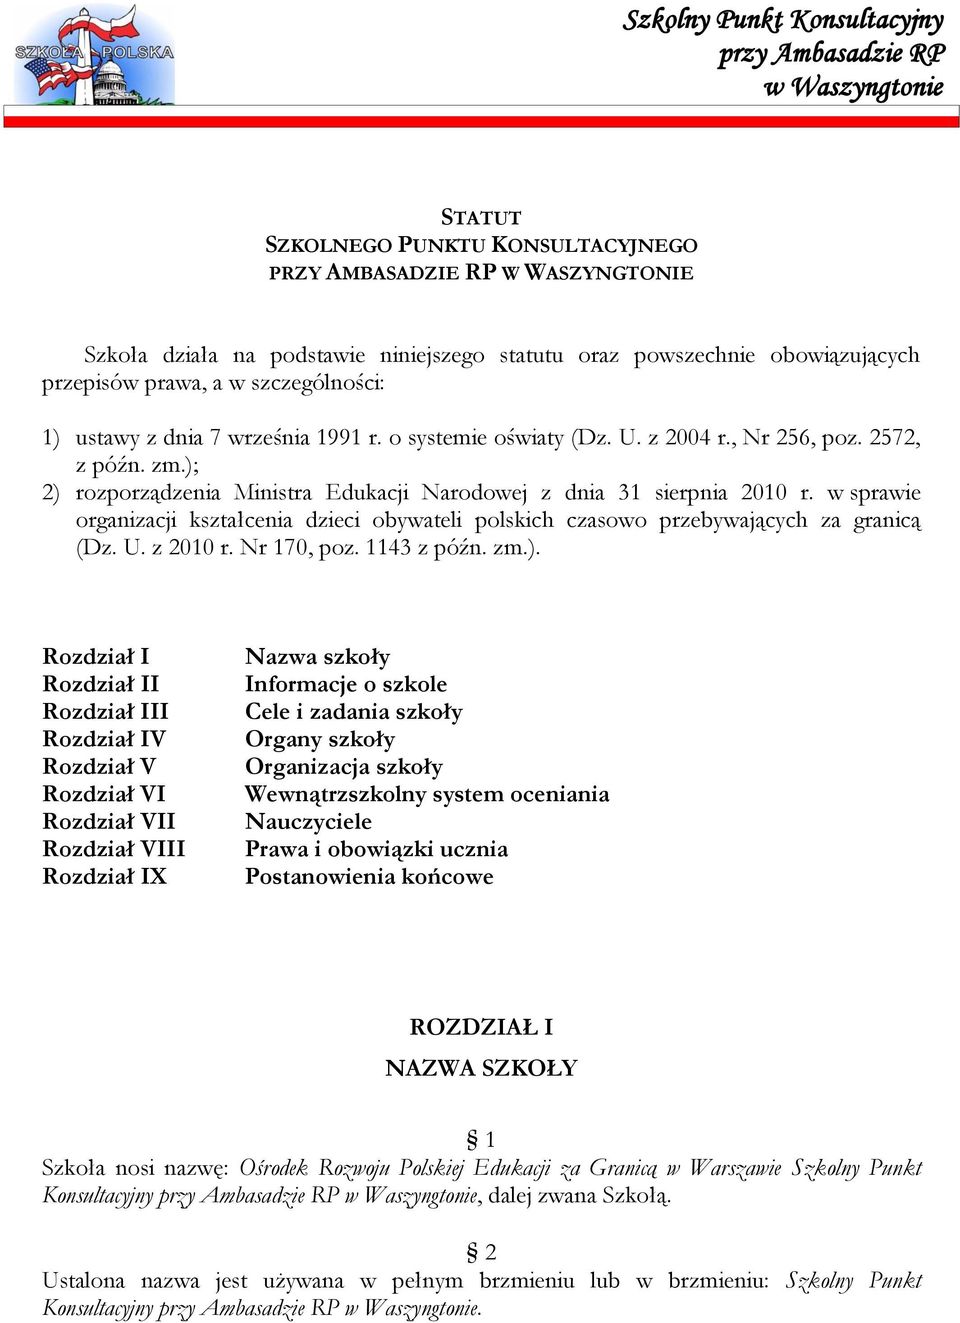 ); 2) rozporządzenia Ministra Edukacji Narodowej z dnia 31 sierpnia 2010 r. w sprawie organizacji kształcenia dzieci obywateli polskich czasowo przebywających za granicą (Dz. U. z 2010 r. Nr 170, poz.